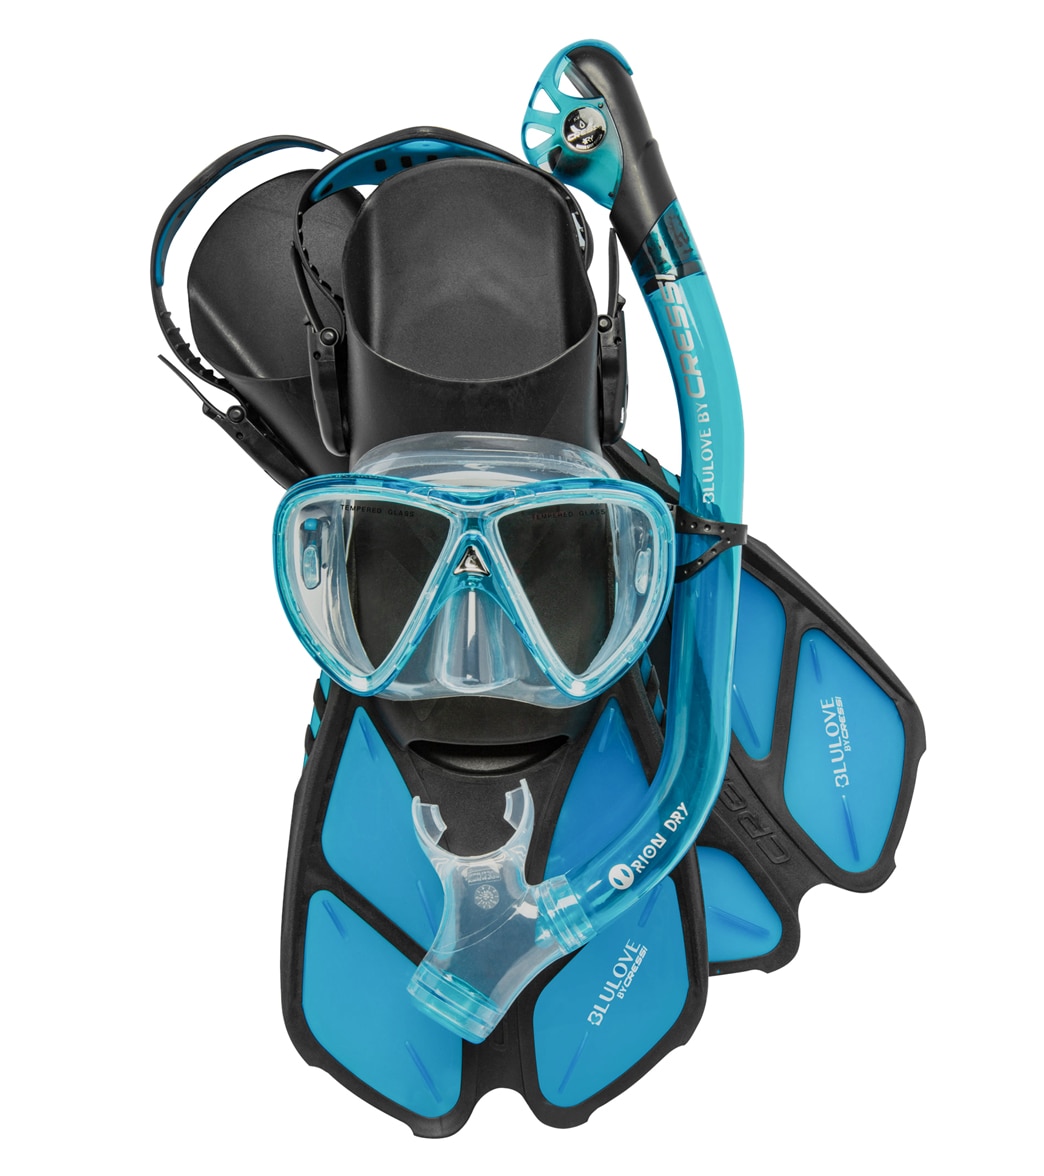 Cressi Ikarius Mask Orion Dry Snorkel And Bonete Pro Fin Set - Aqua L/Xl - Swimoutlet.com